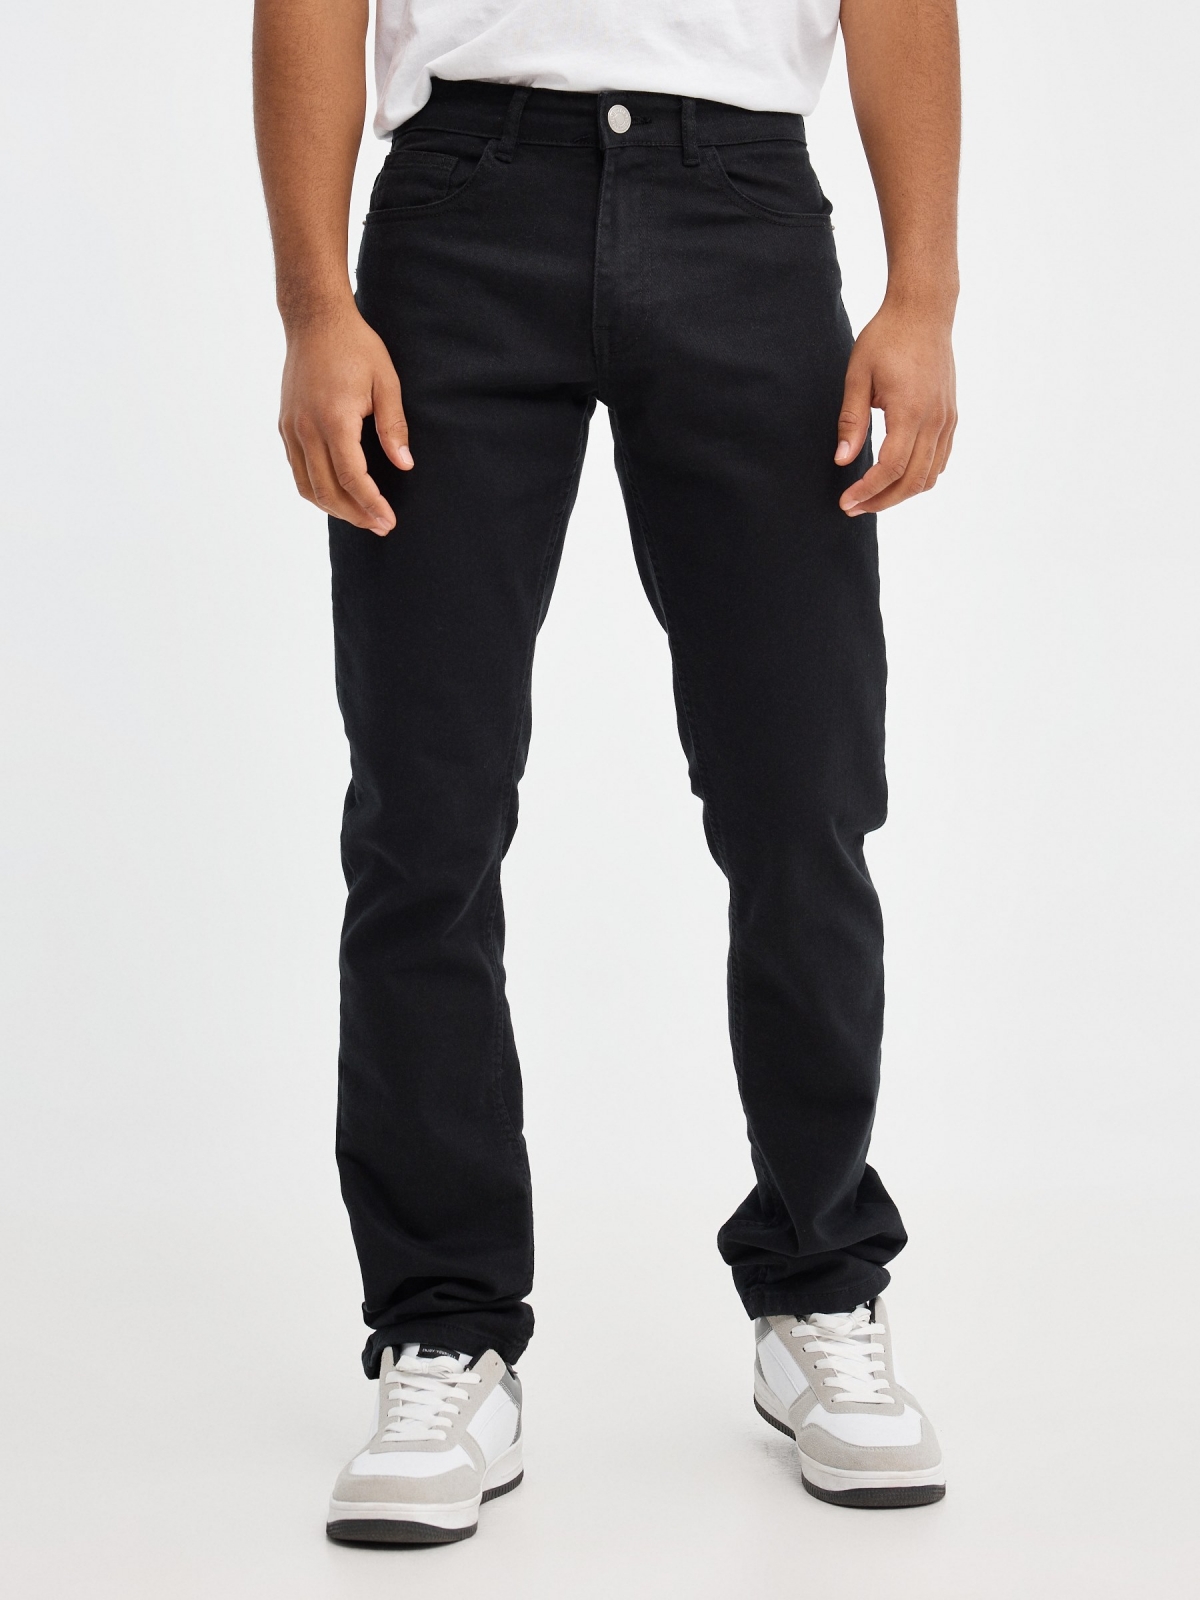 Jeans básicos de colores negro vista media frontal